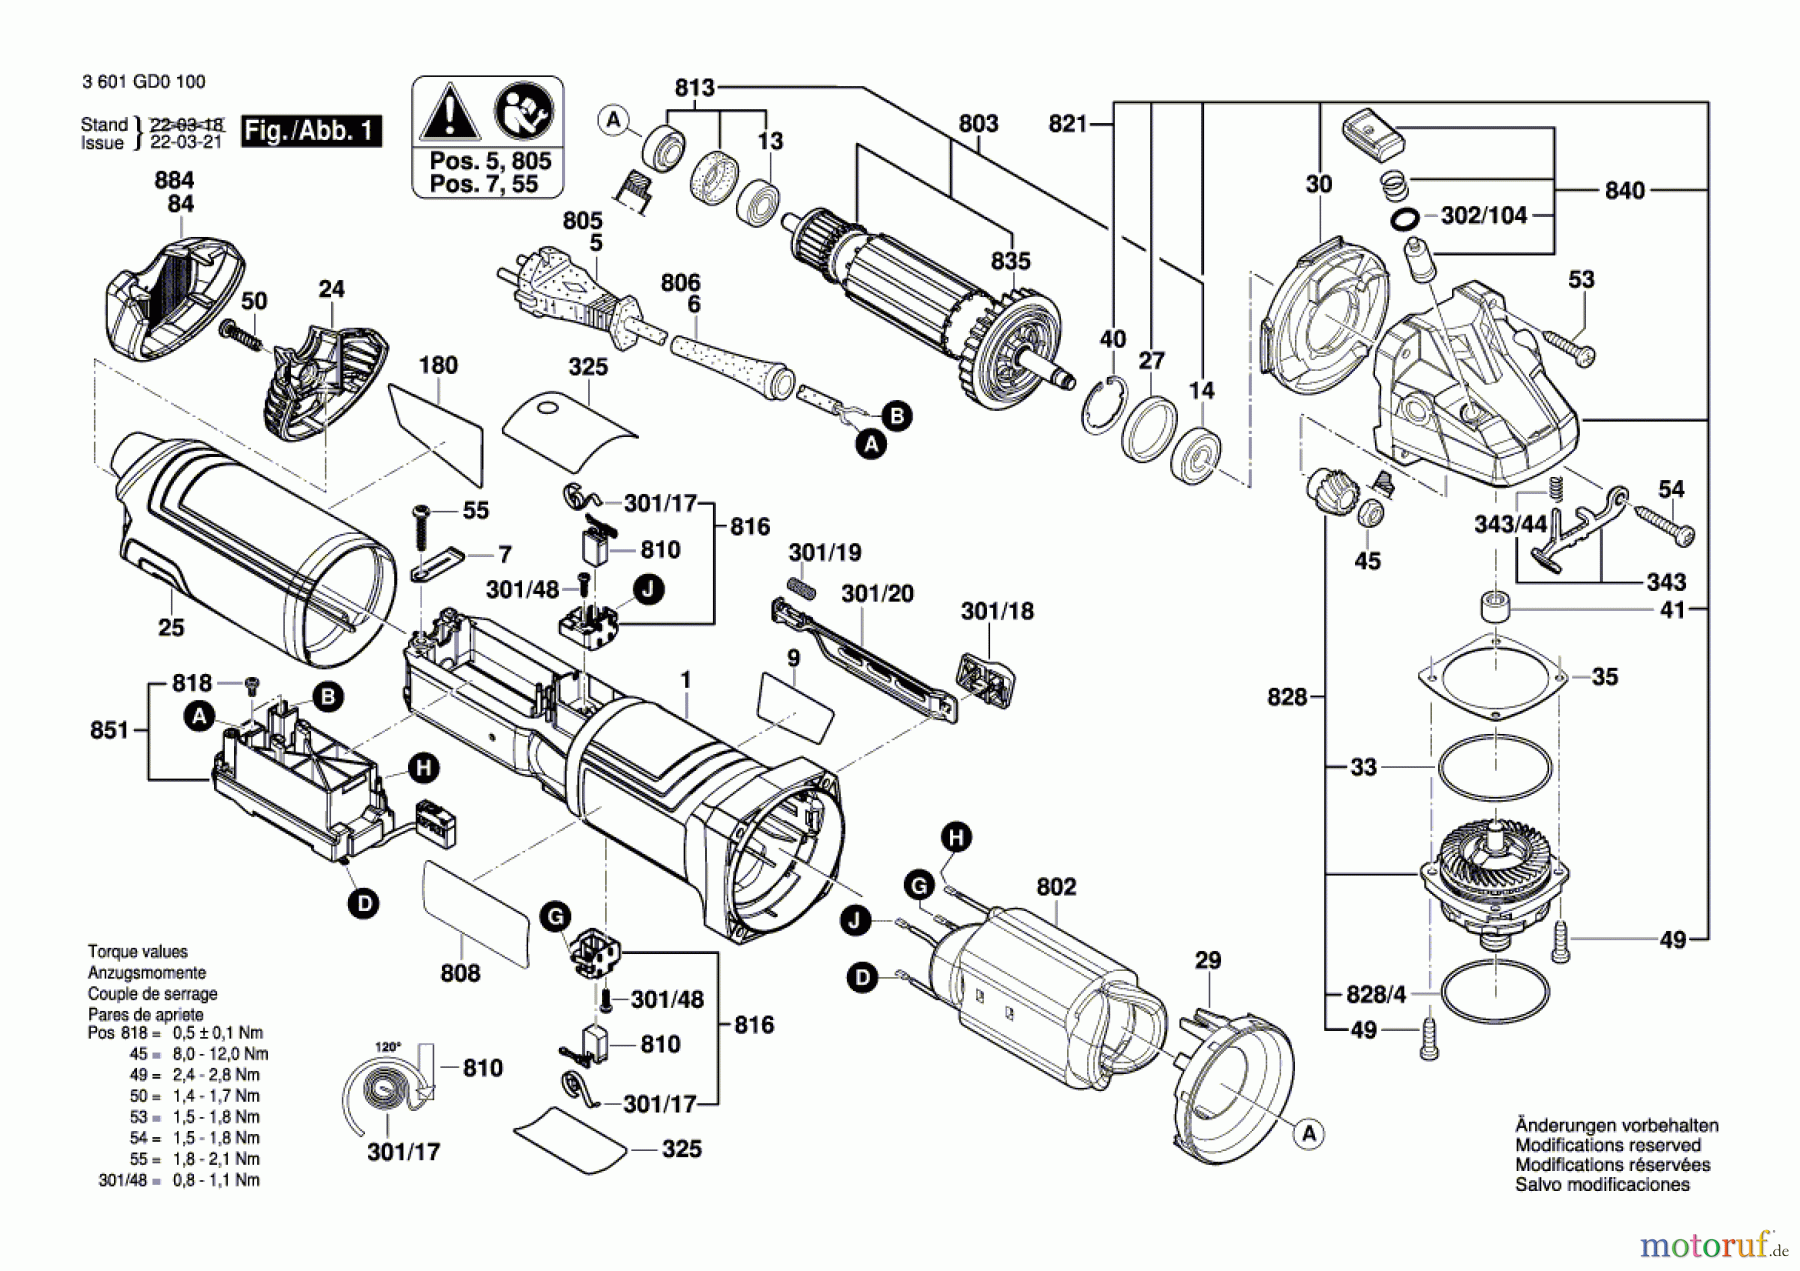  Bosch Werkzeug Winkelschleifer GWS 14-125 S Seite 1